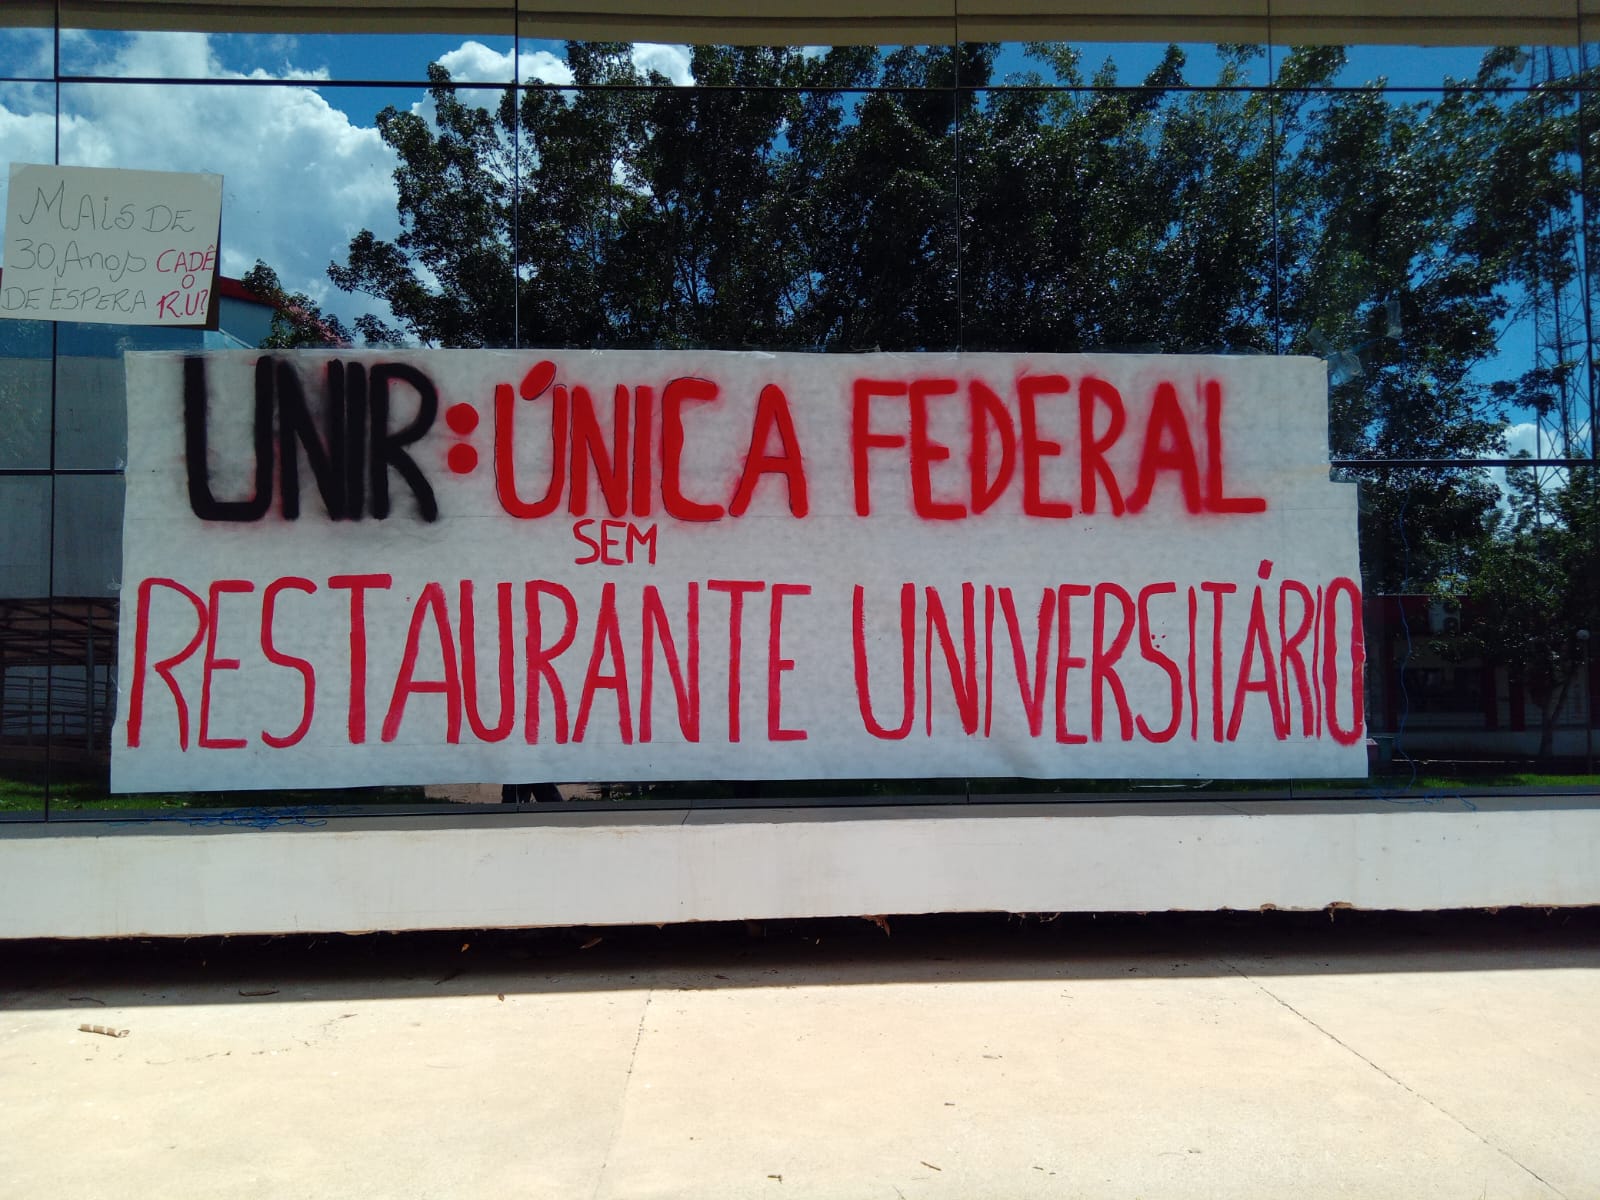 EM PORTO VELHO: Restaurante Universitário da UNIR deve começar a funcionar em breve